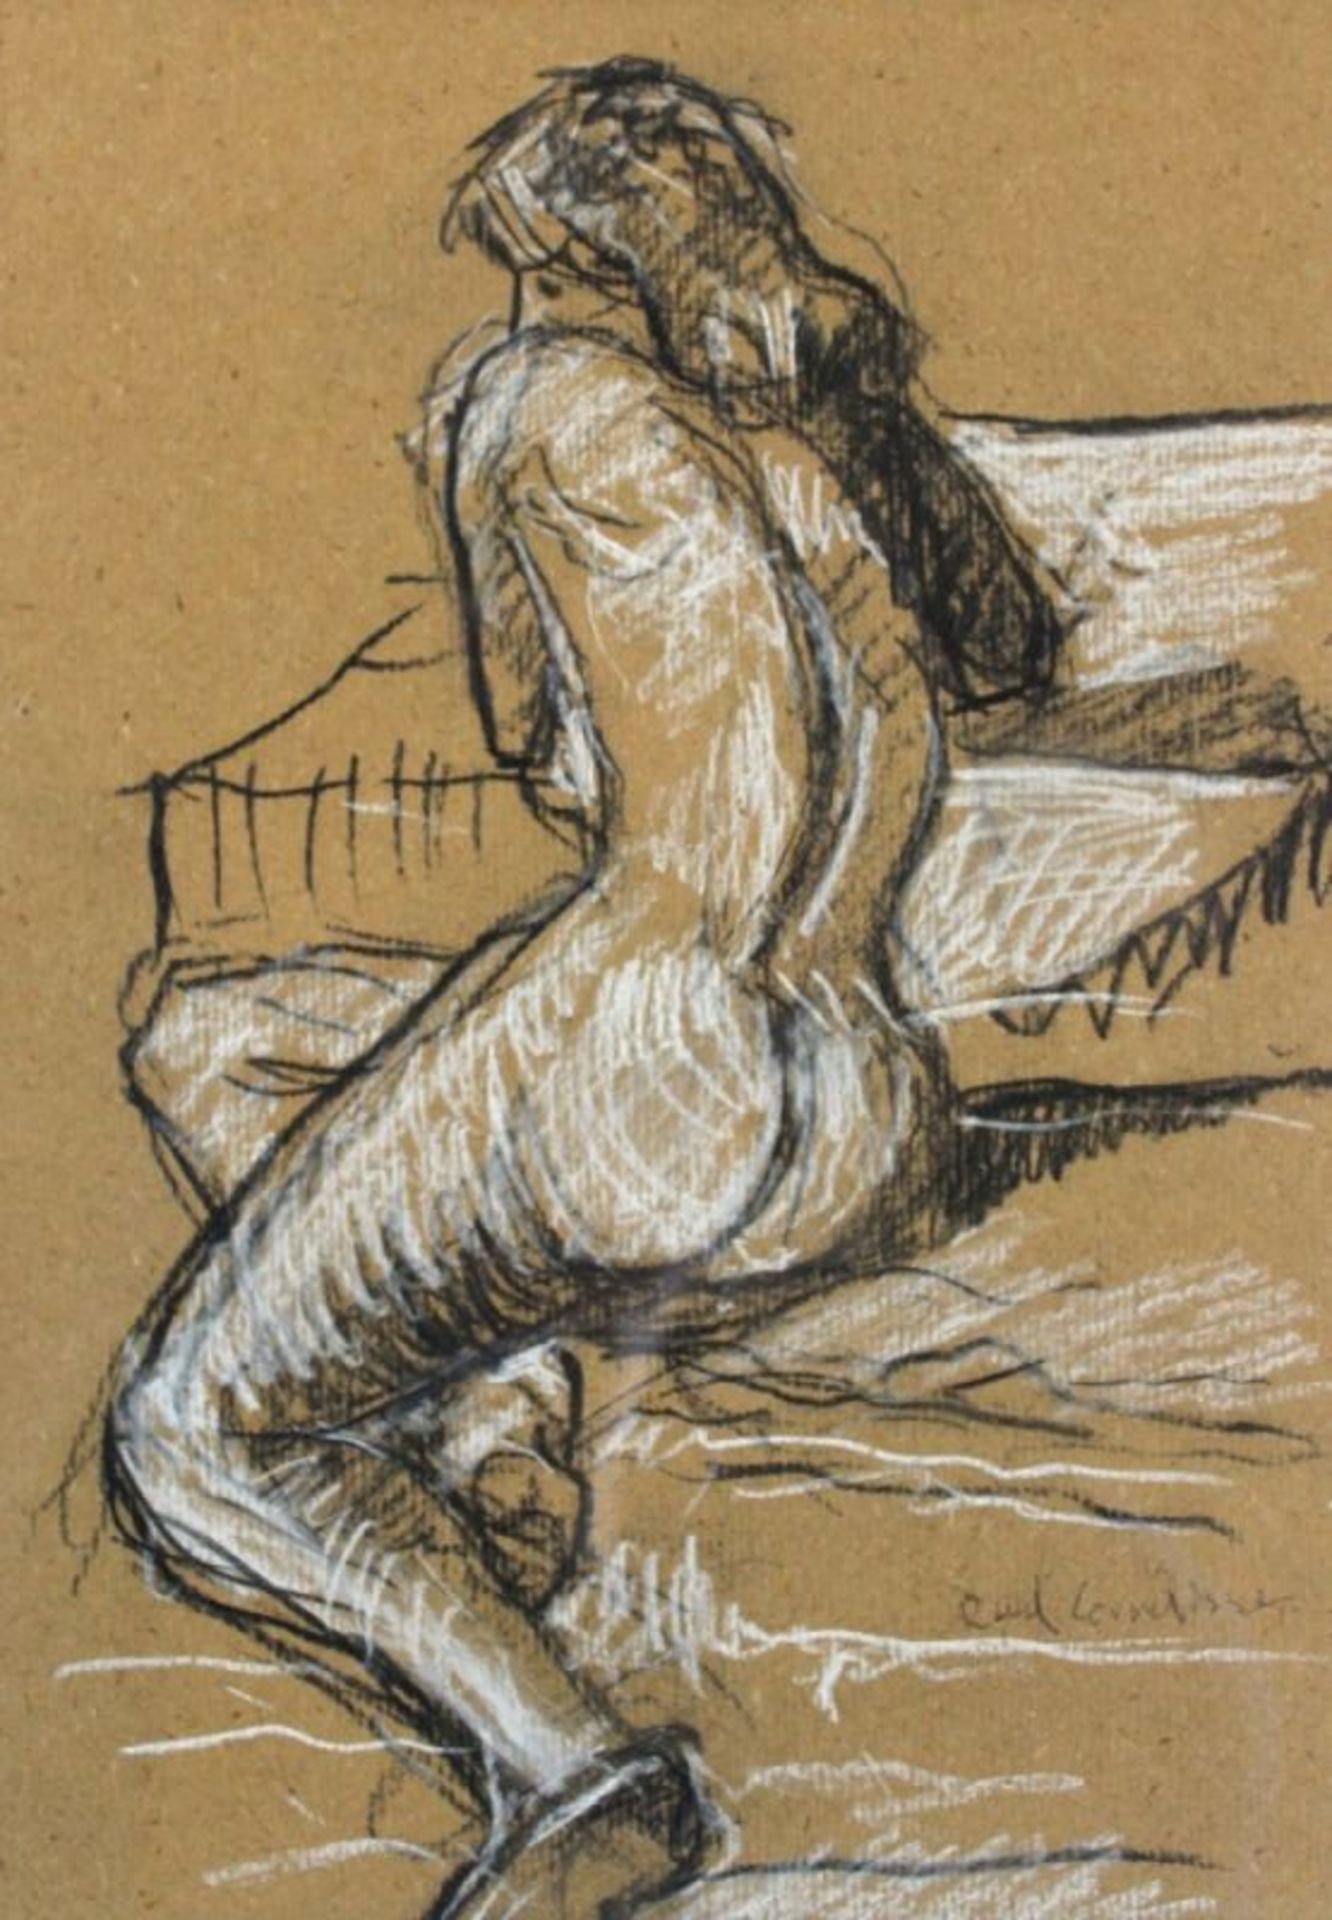 Zeichnung - Ruud Cornelisse (1940) "Frauenakt", r.u. signiert, Kohle auf Papier, weiß gehöht, Maße